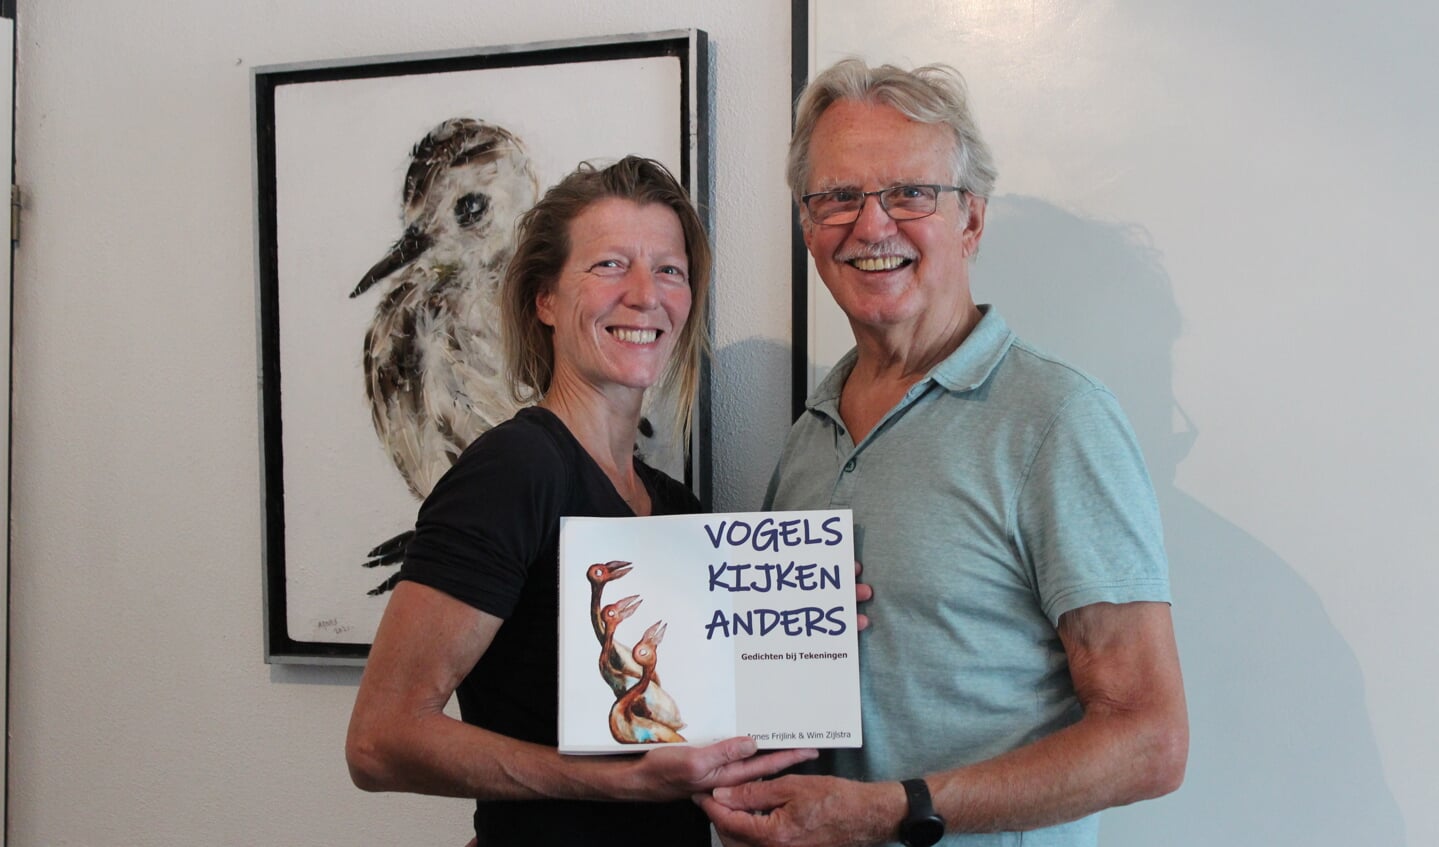  Frijlink en Zijlstra tonen vol trots hun boek dat ze zelf een ‘prachtig en krachtig uitgebroed kuiken' noemen. 